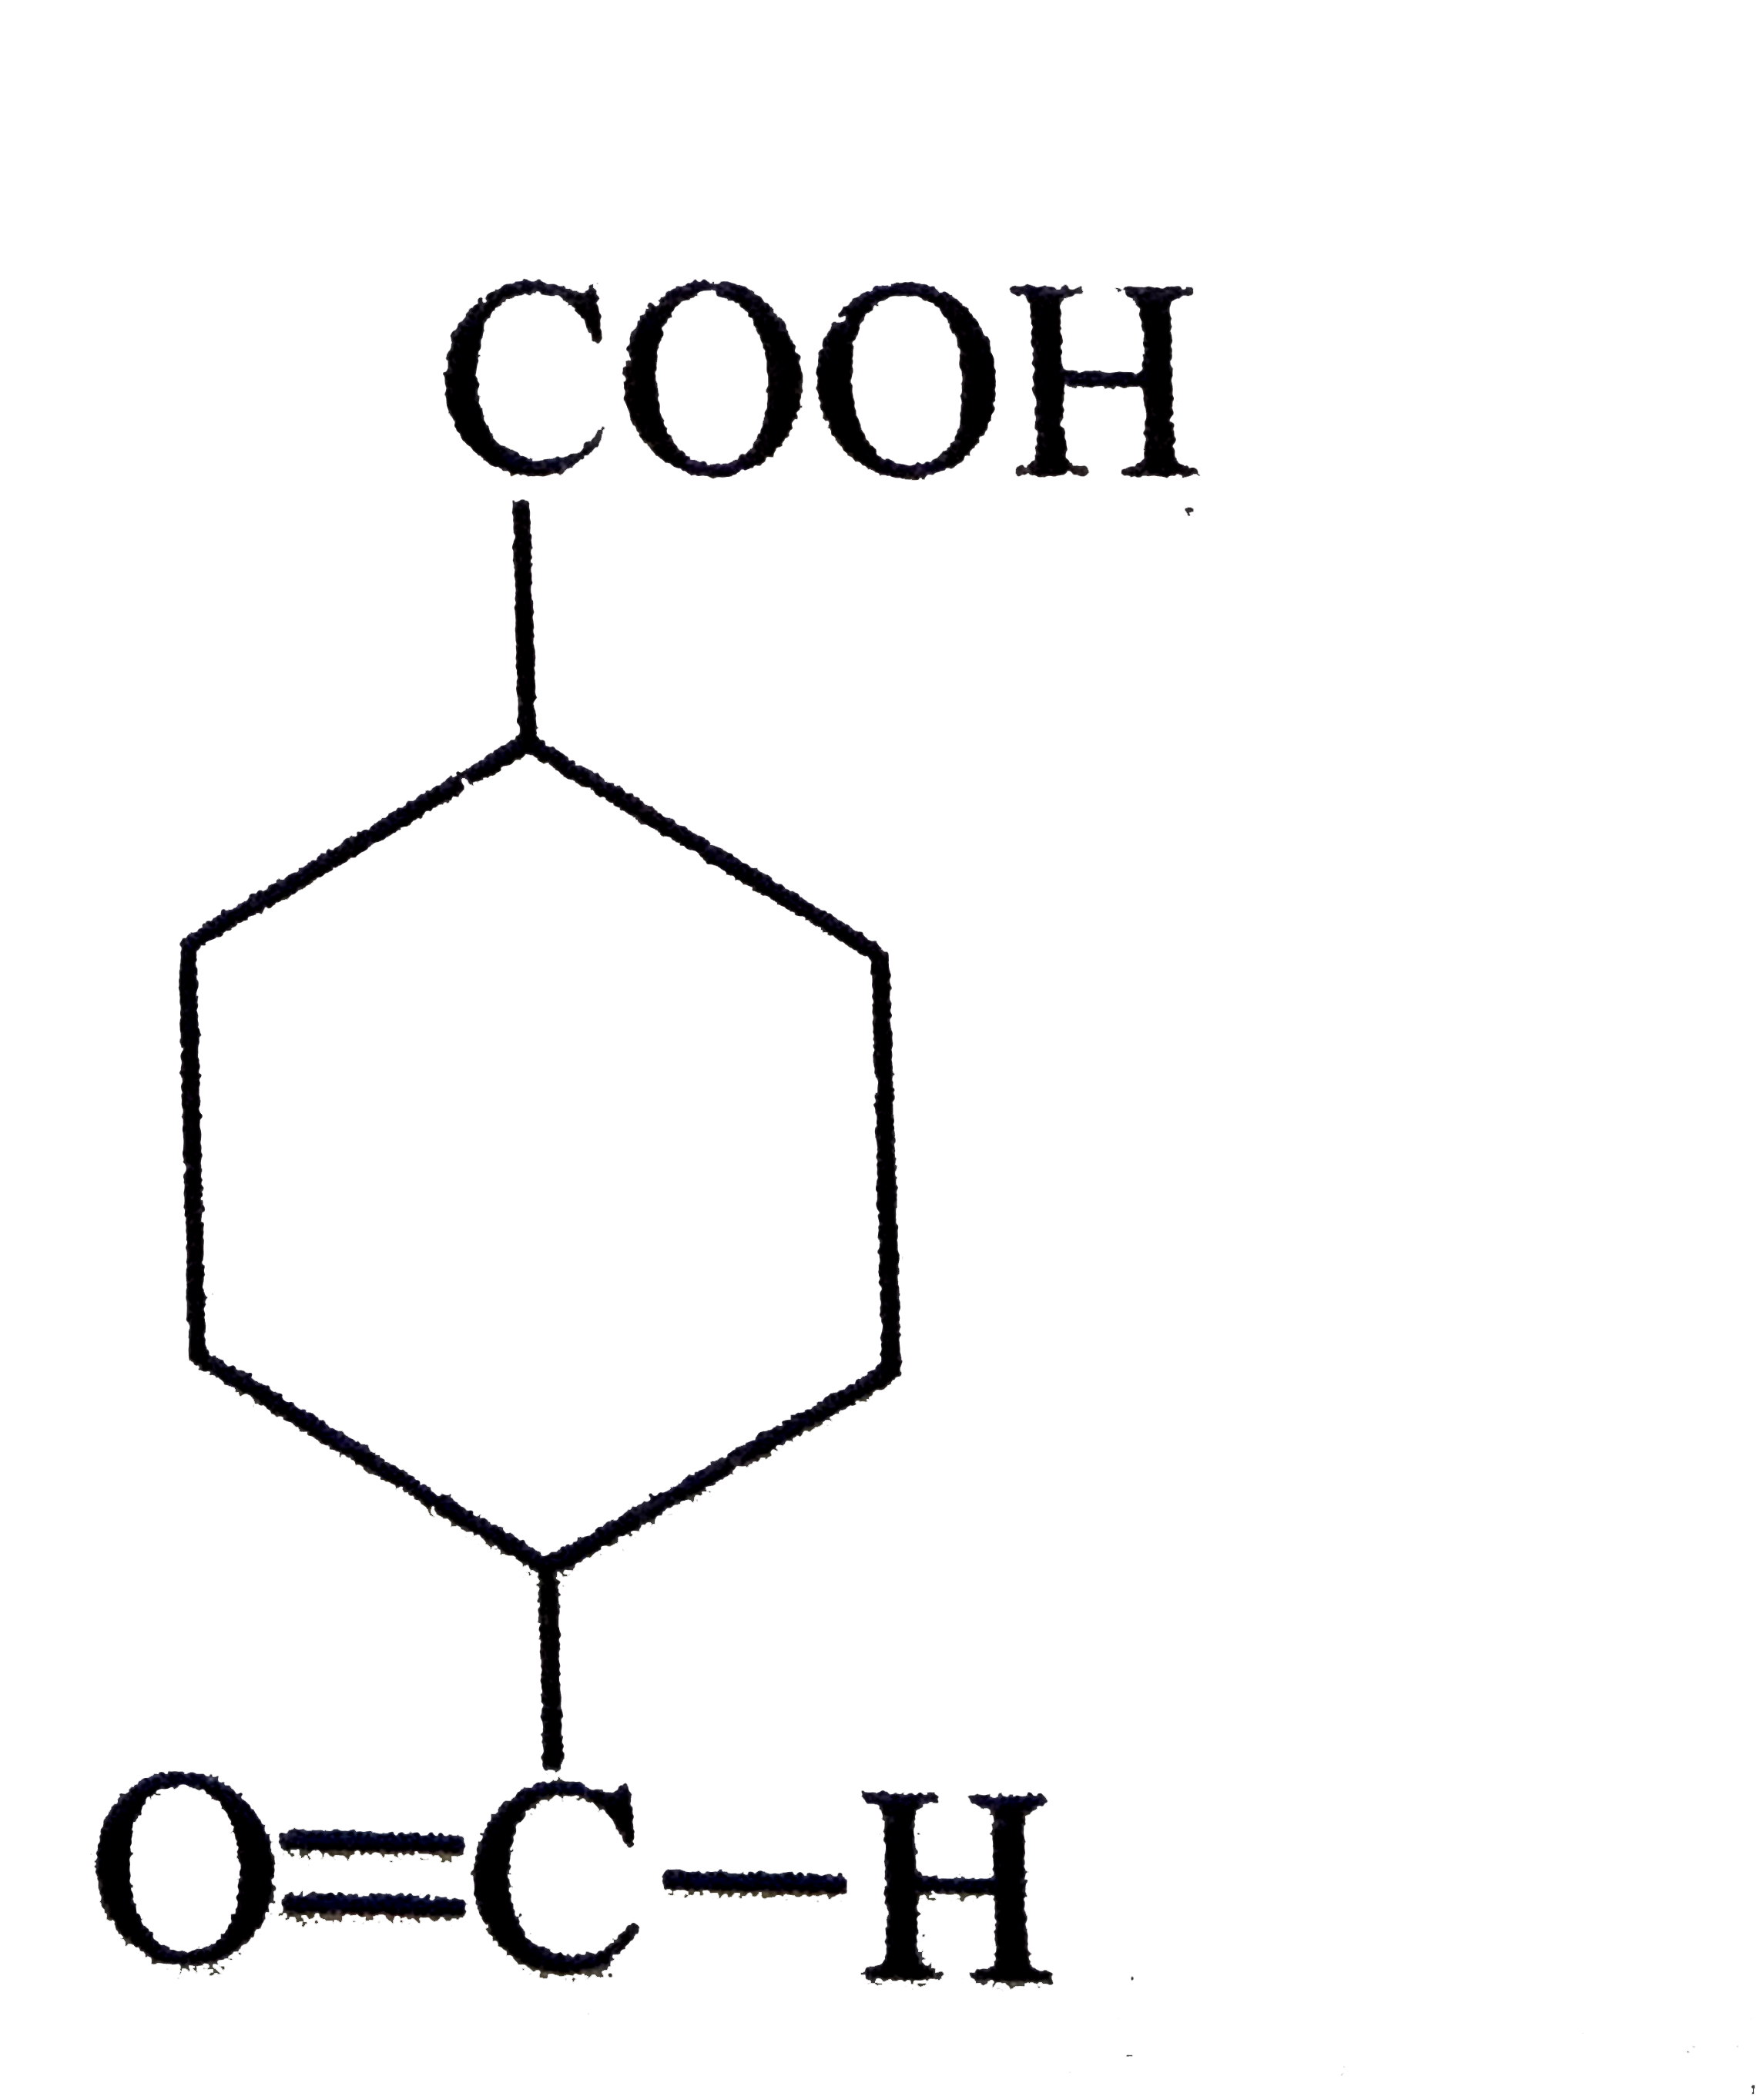 The IUPAC name of the